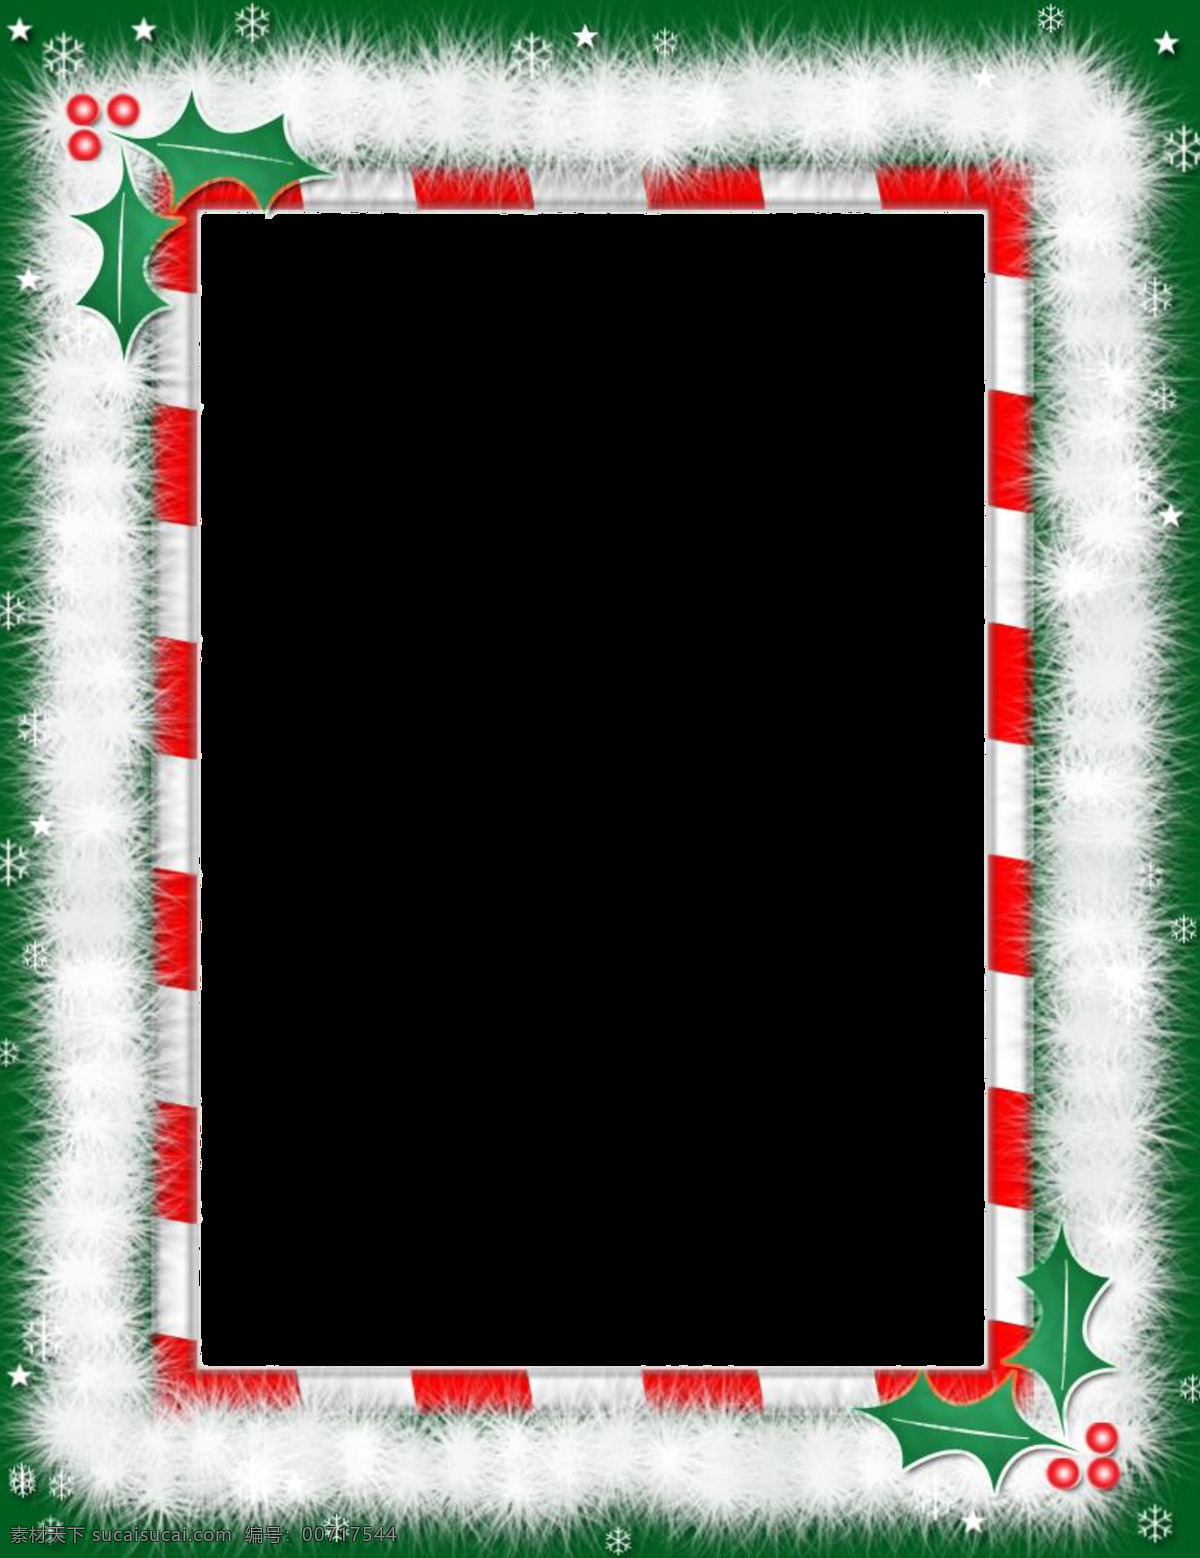 漂亮 圣诞 绿色 边框 免 抠 透明 圣诞素材 圣诞元素 雪人 圣诞雪橇 圣诞老人 圣诞球 圣诞树 圣诞礼盒 圣诞帽 圣诞彩灯 圣诞风铃 圣诞卡片